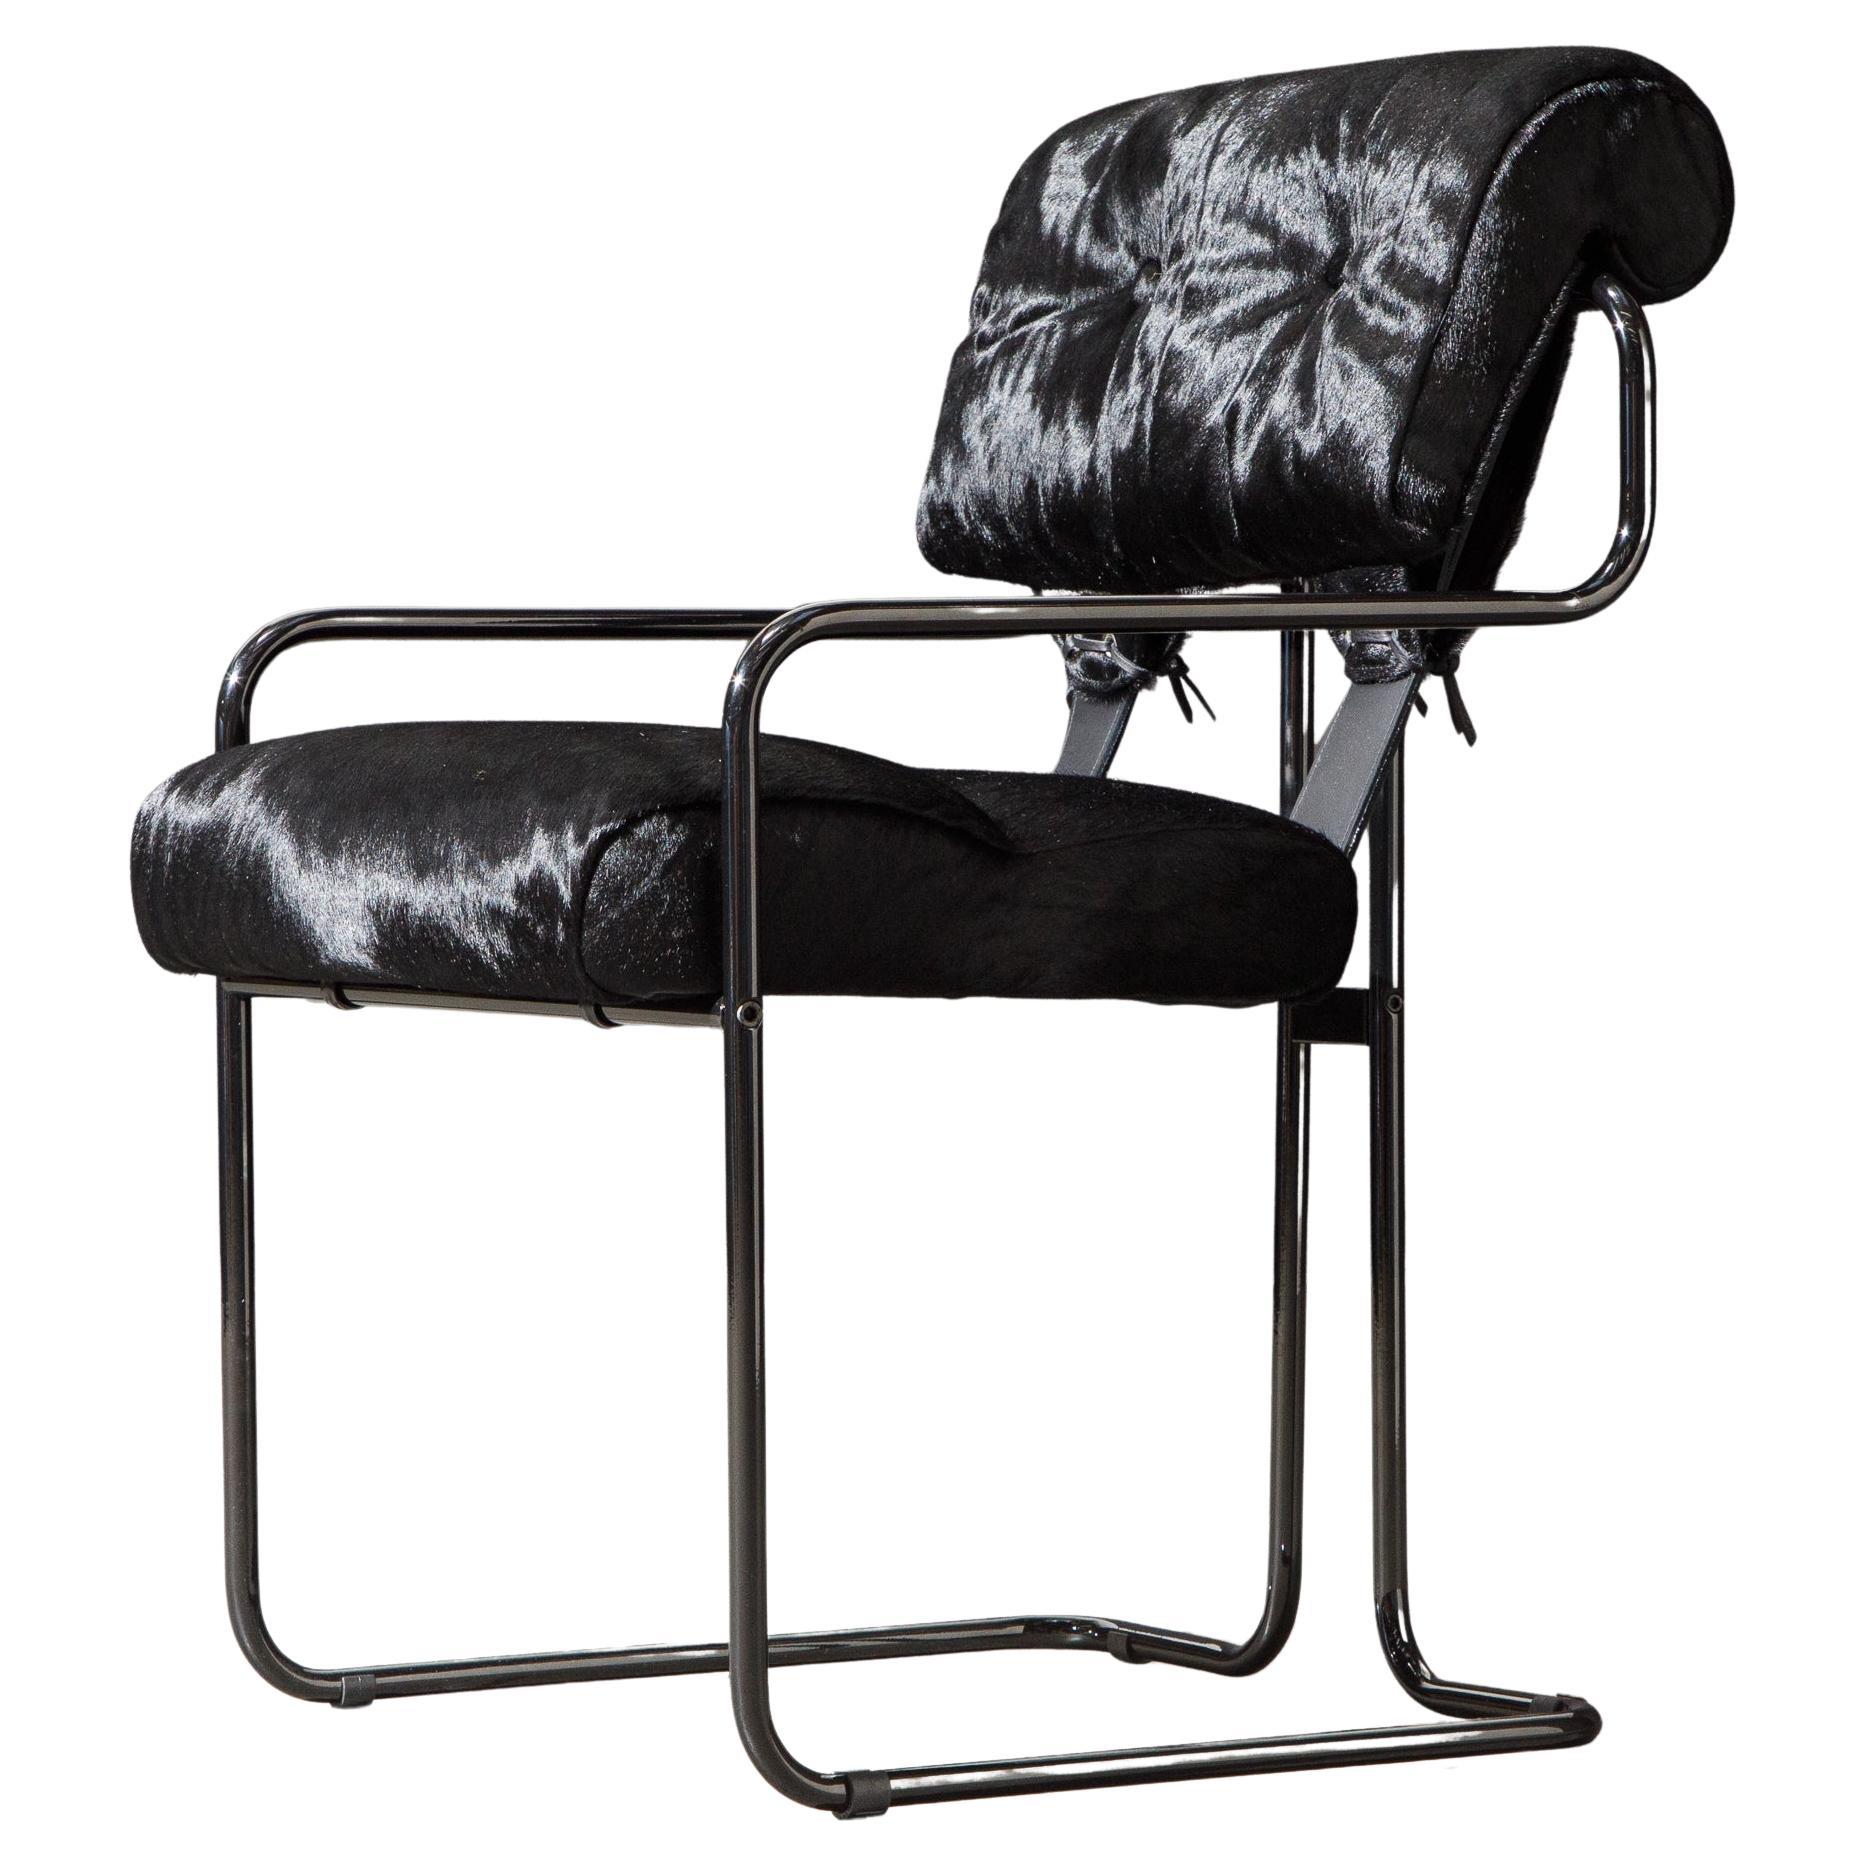 Schwarzer Sessel „Tucroma“ mit Haarlehnen an der Seite von Guido Faleschini für Mariani, neu